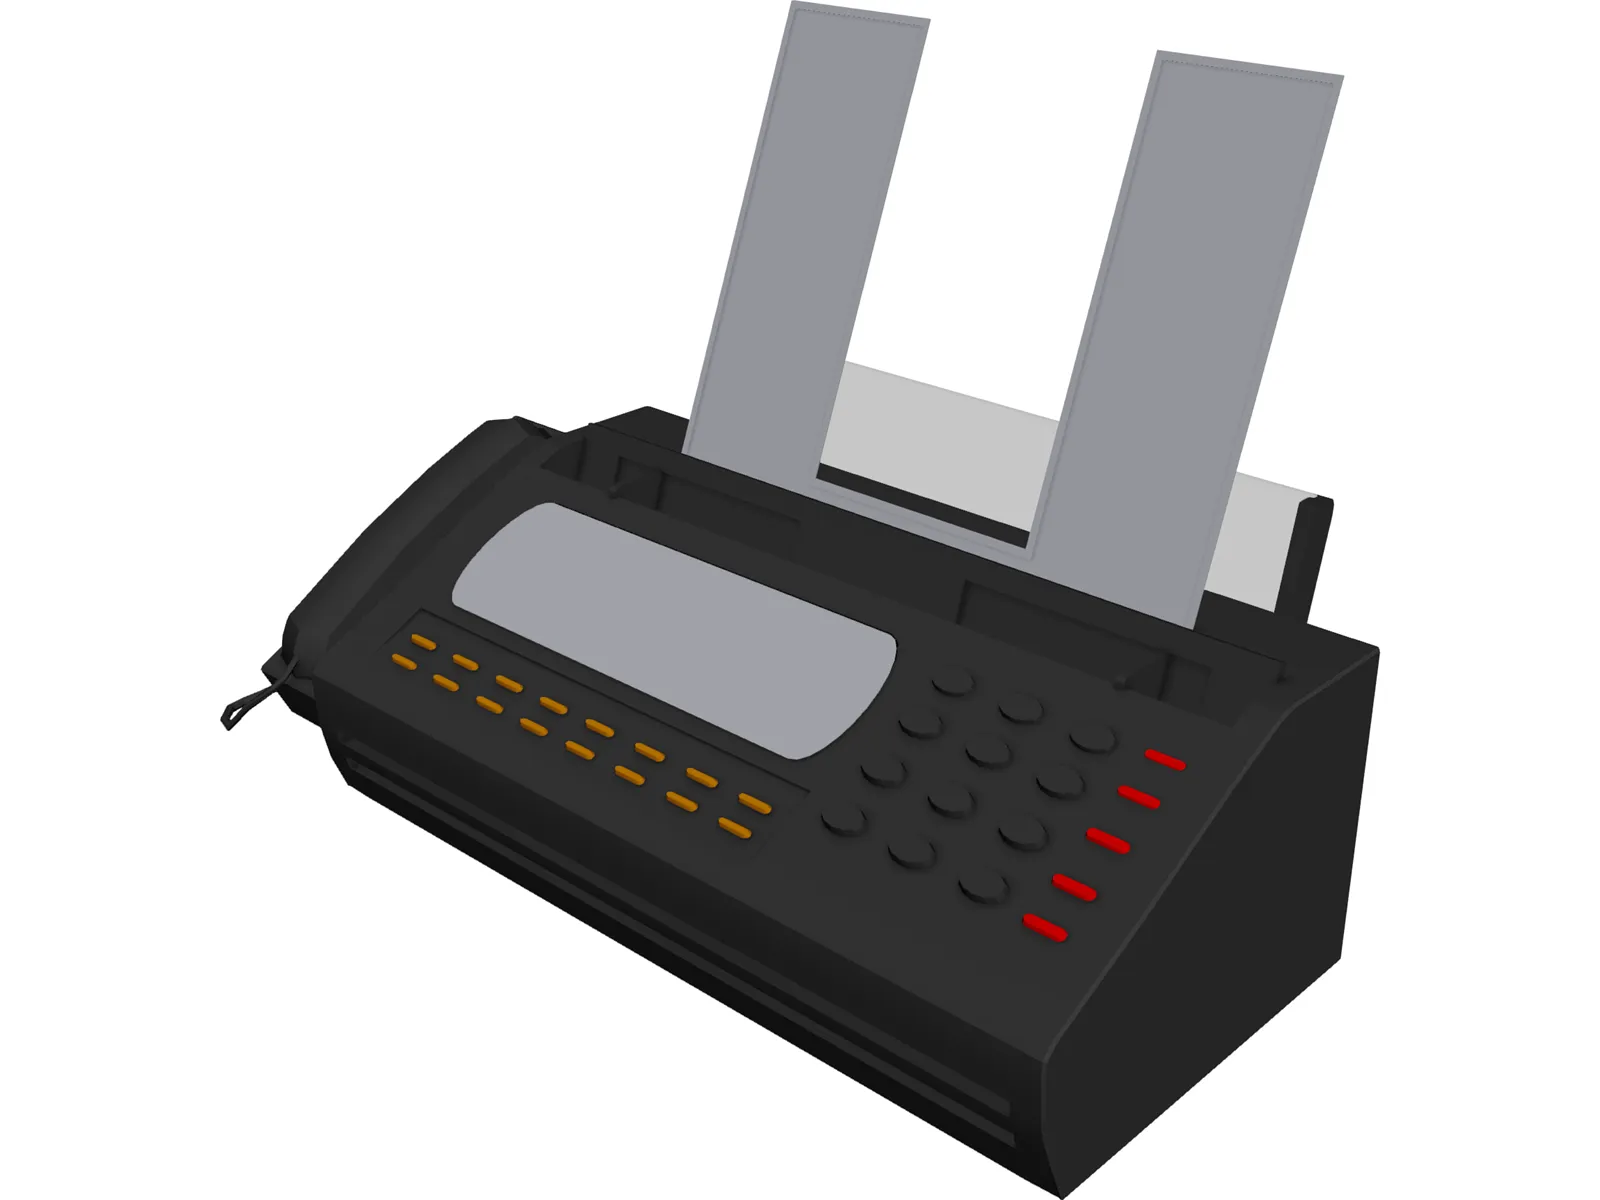 Fax Machine 3D Model